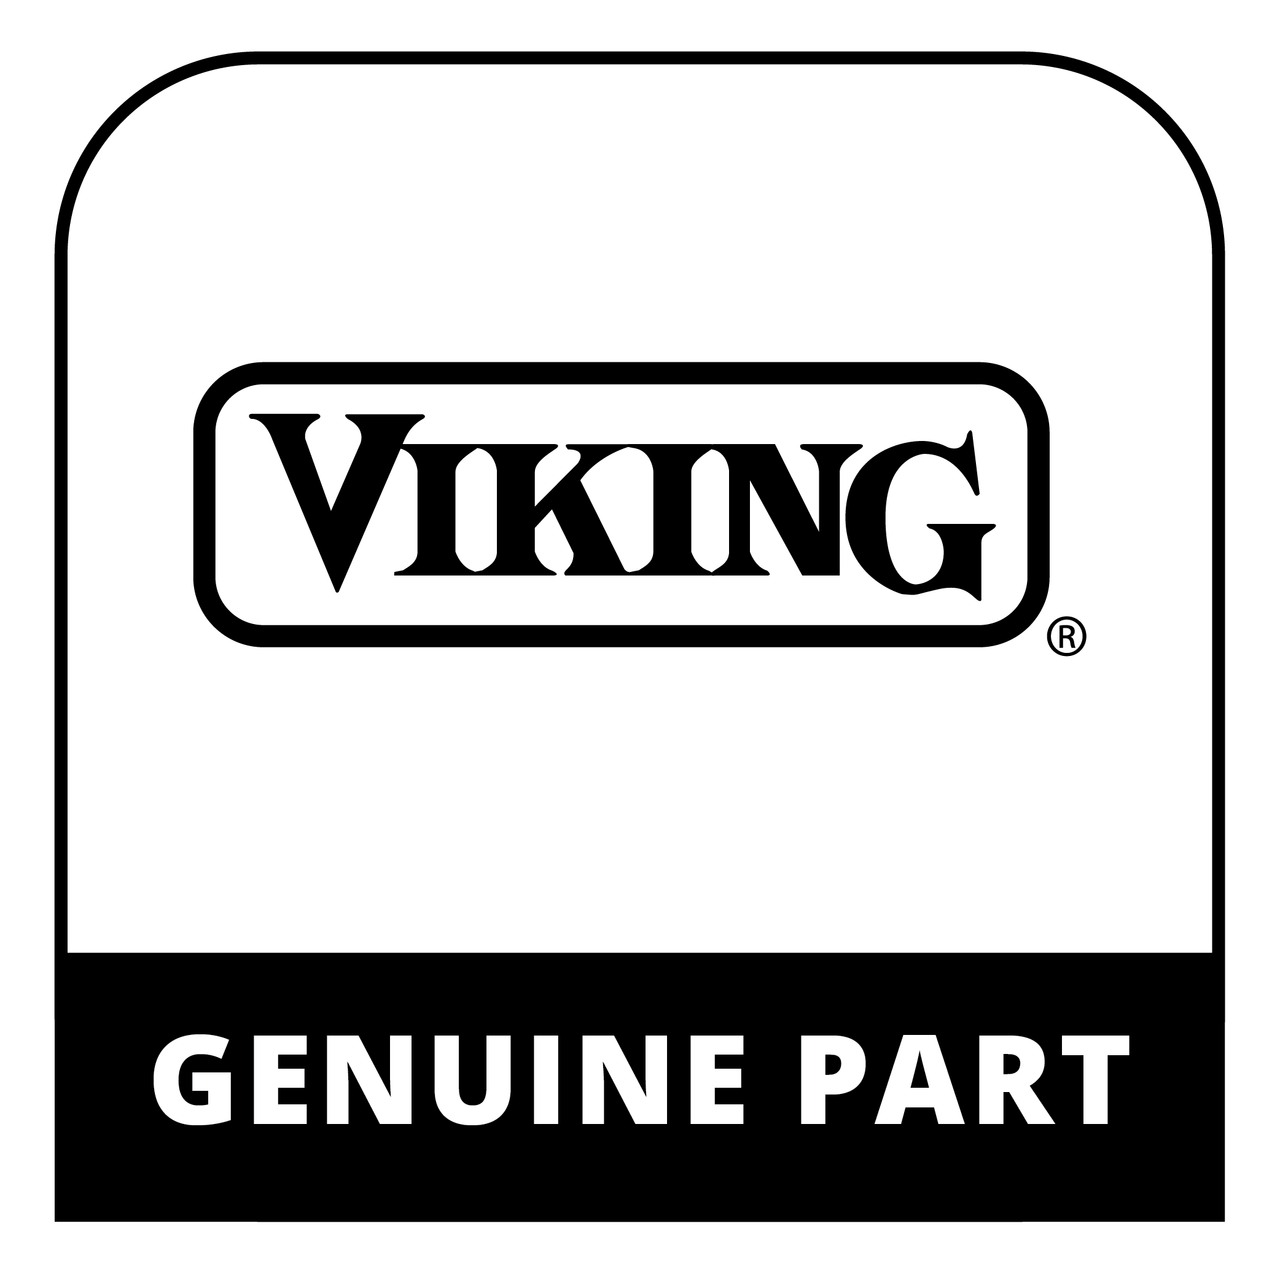 Viking PA060131 - SEALED TOP CENTER GRATE GRAY - Genuine Viking Part